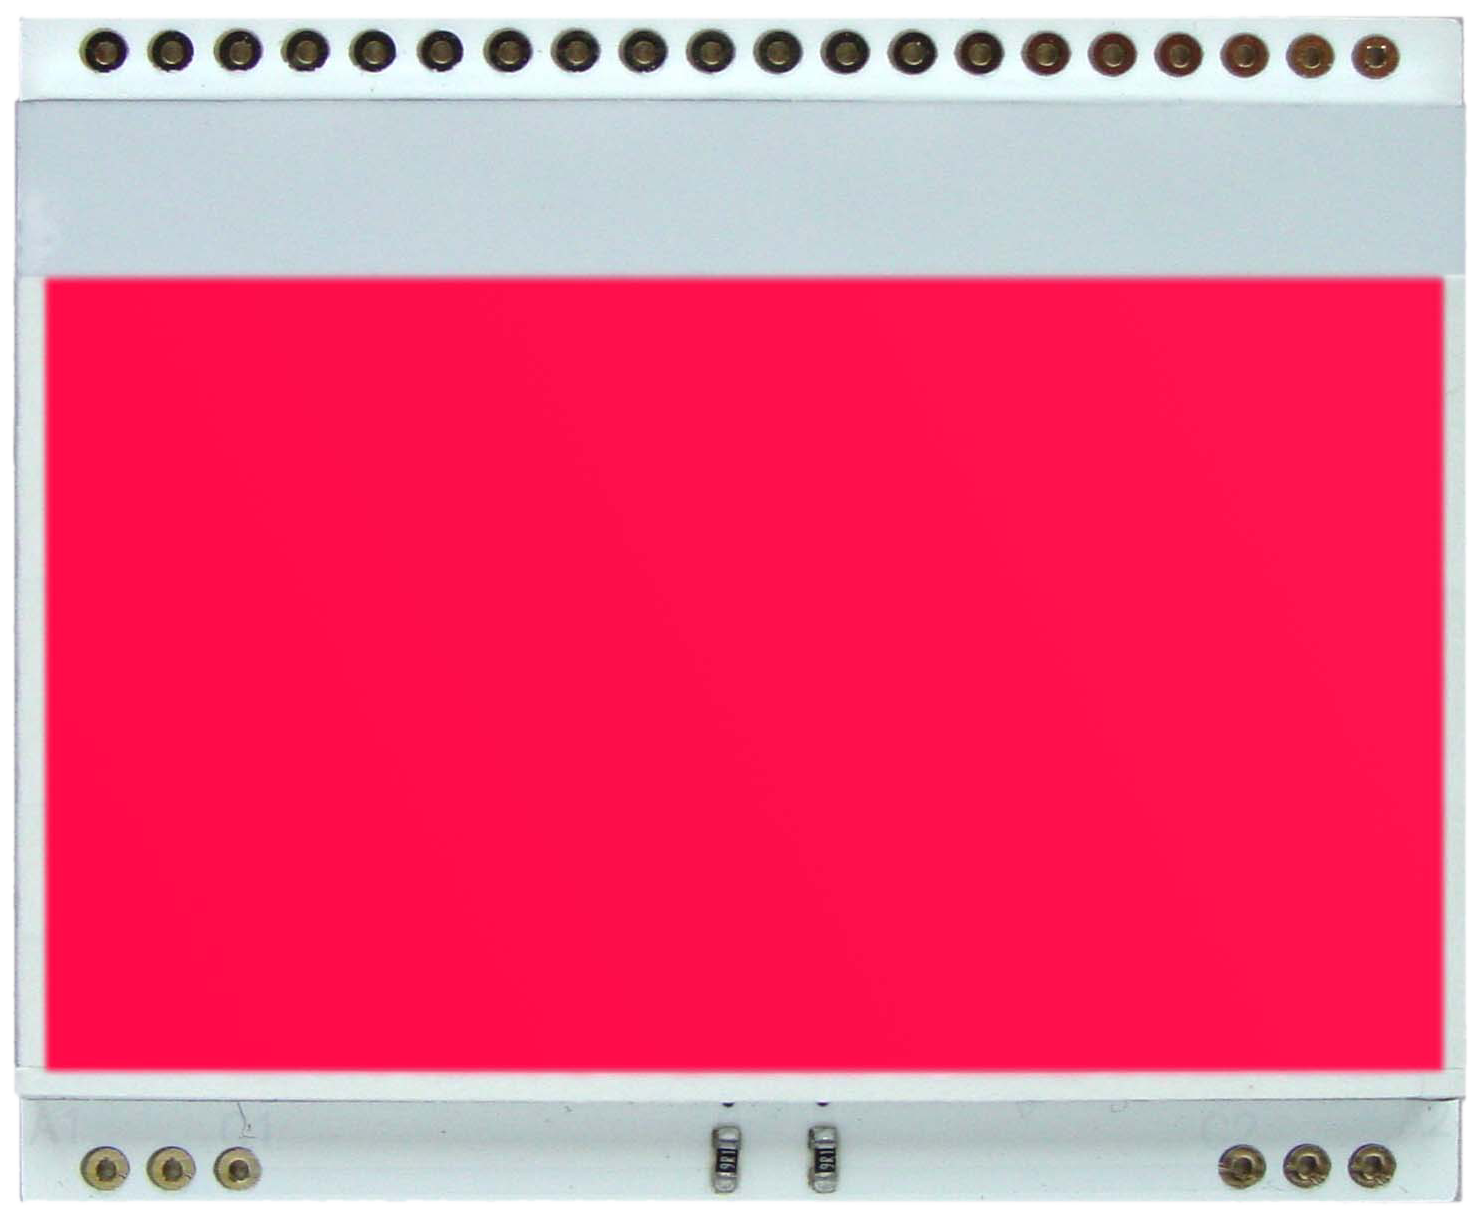 LED backlit unit for EA DOGM128-6, red